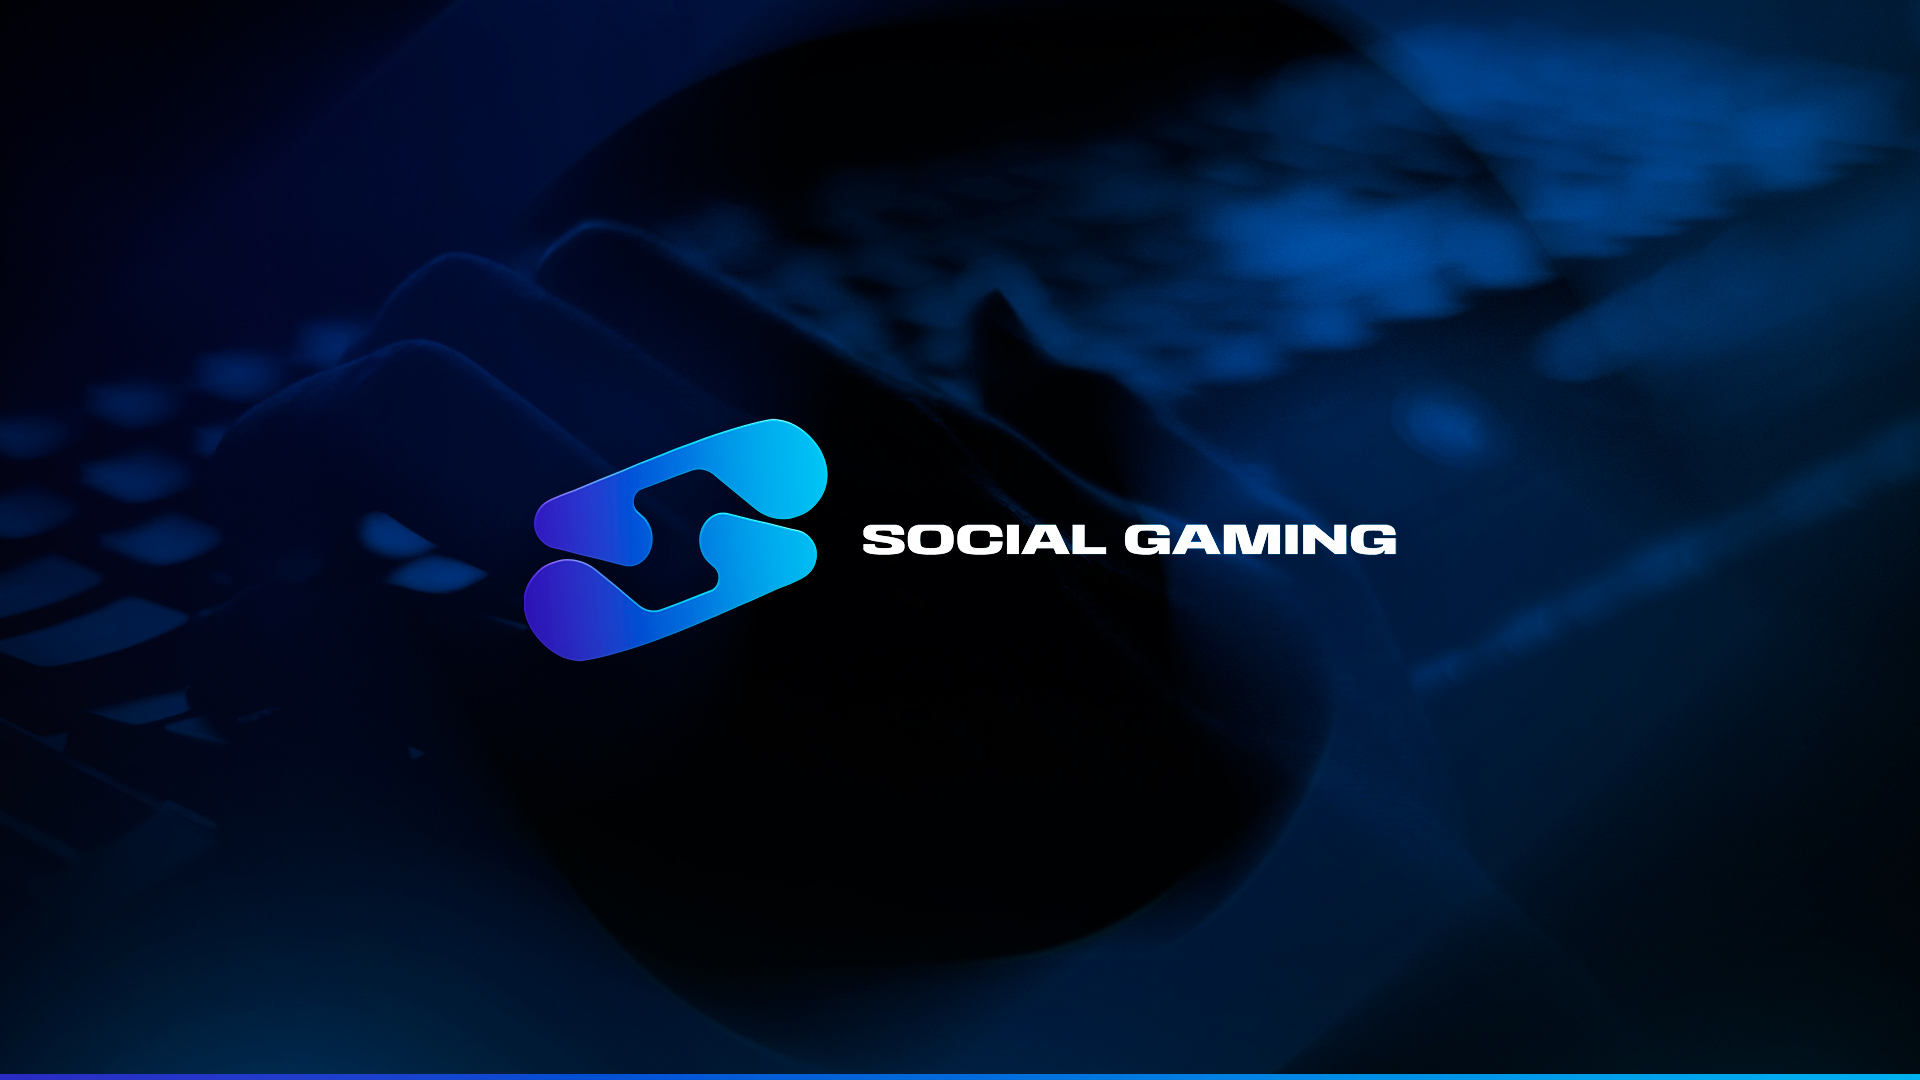 Uusi organisaatio Social Gaming julkaisee 4. helmikuuta uuden organisaation, jonka kaltaista ei ole vielä Suomessa nähty.